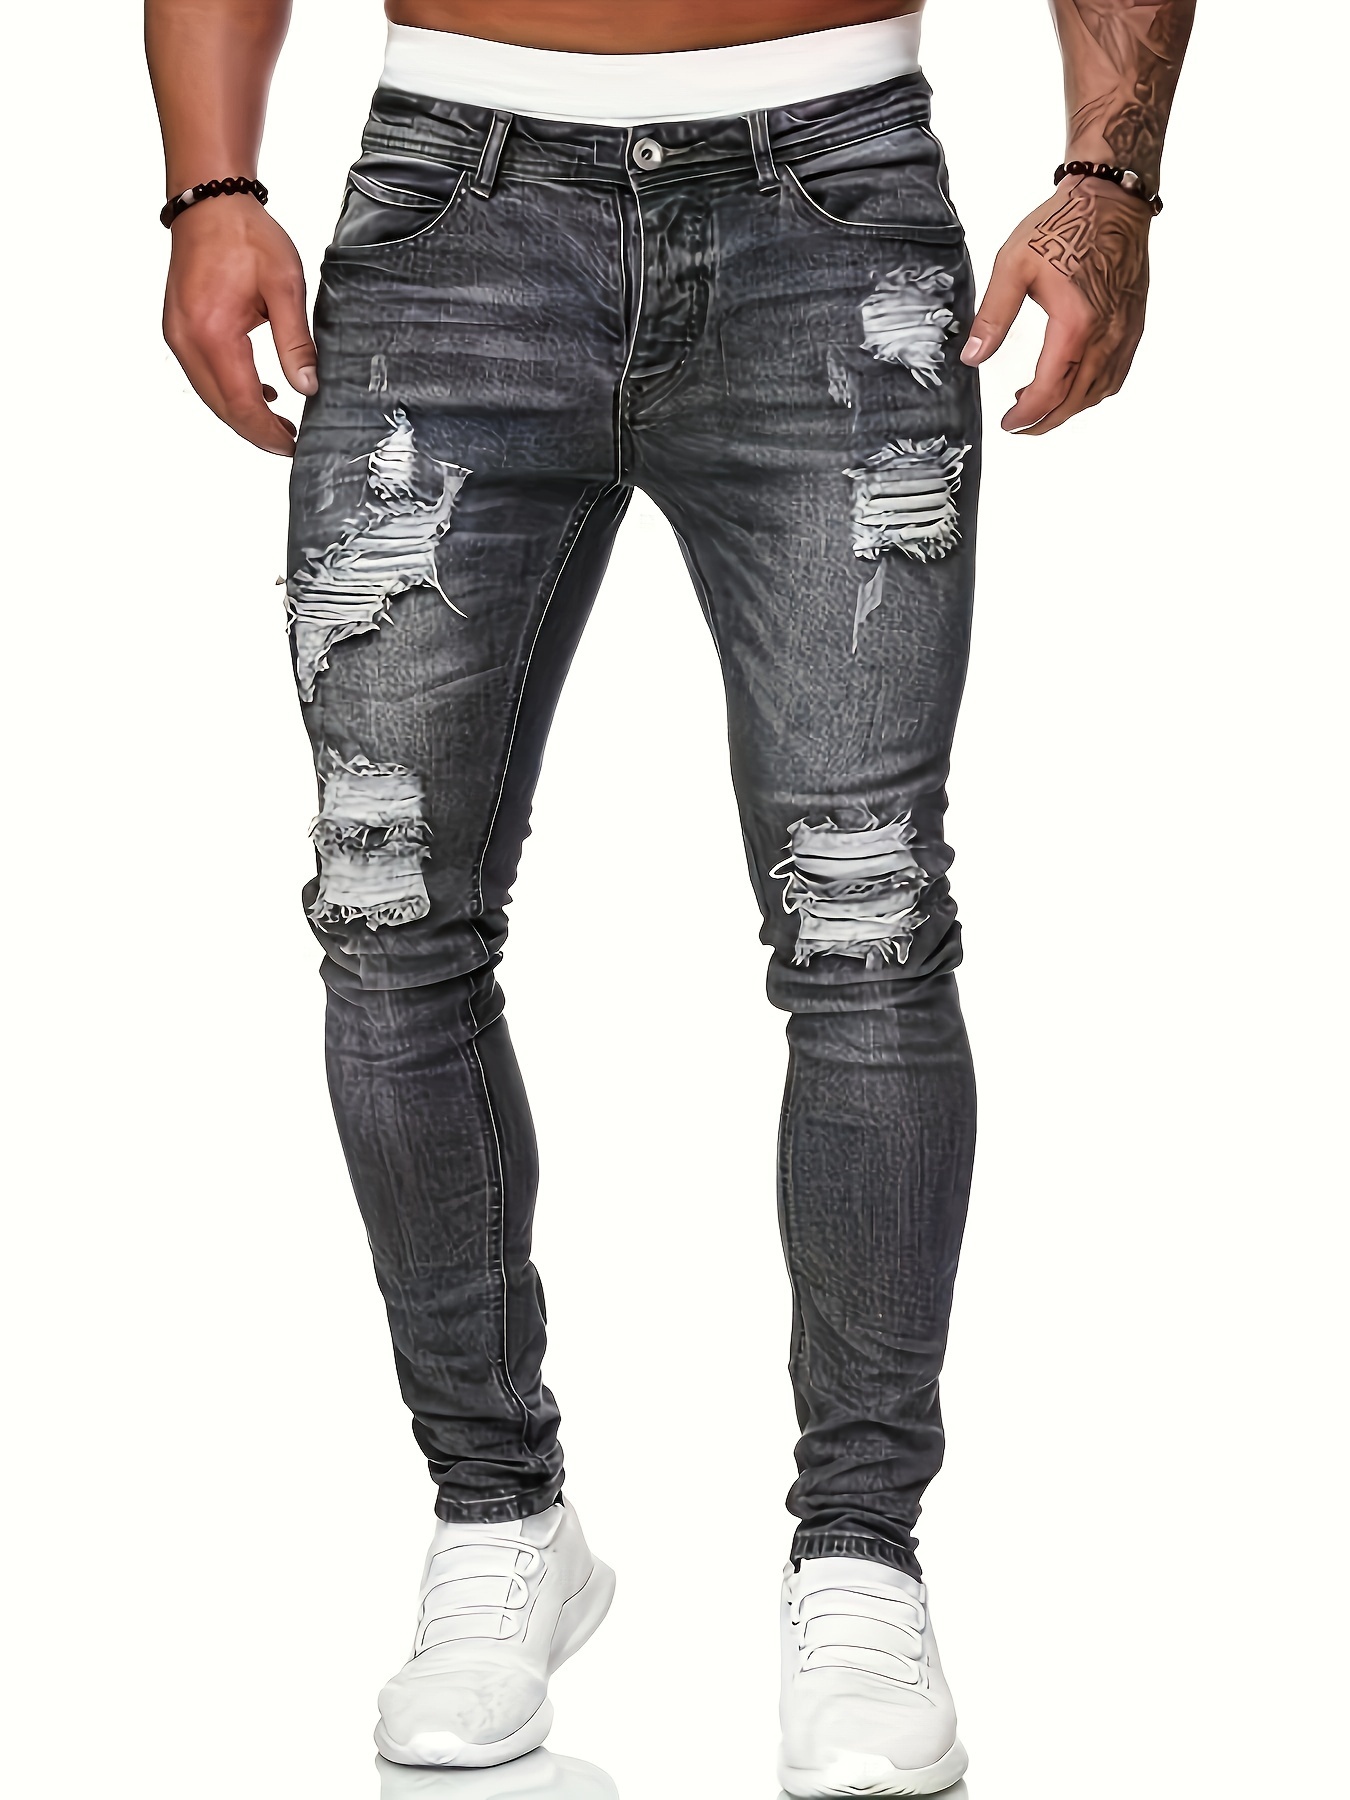 Pantalones Vaqueros/Jeans de algodón rasgados y ajustados - Mezclilla  elástico - Estilo Urbano casual para hombre - ¡Ideal para usar en primavera  y ve